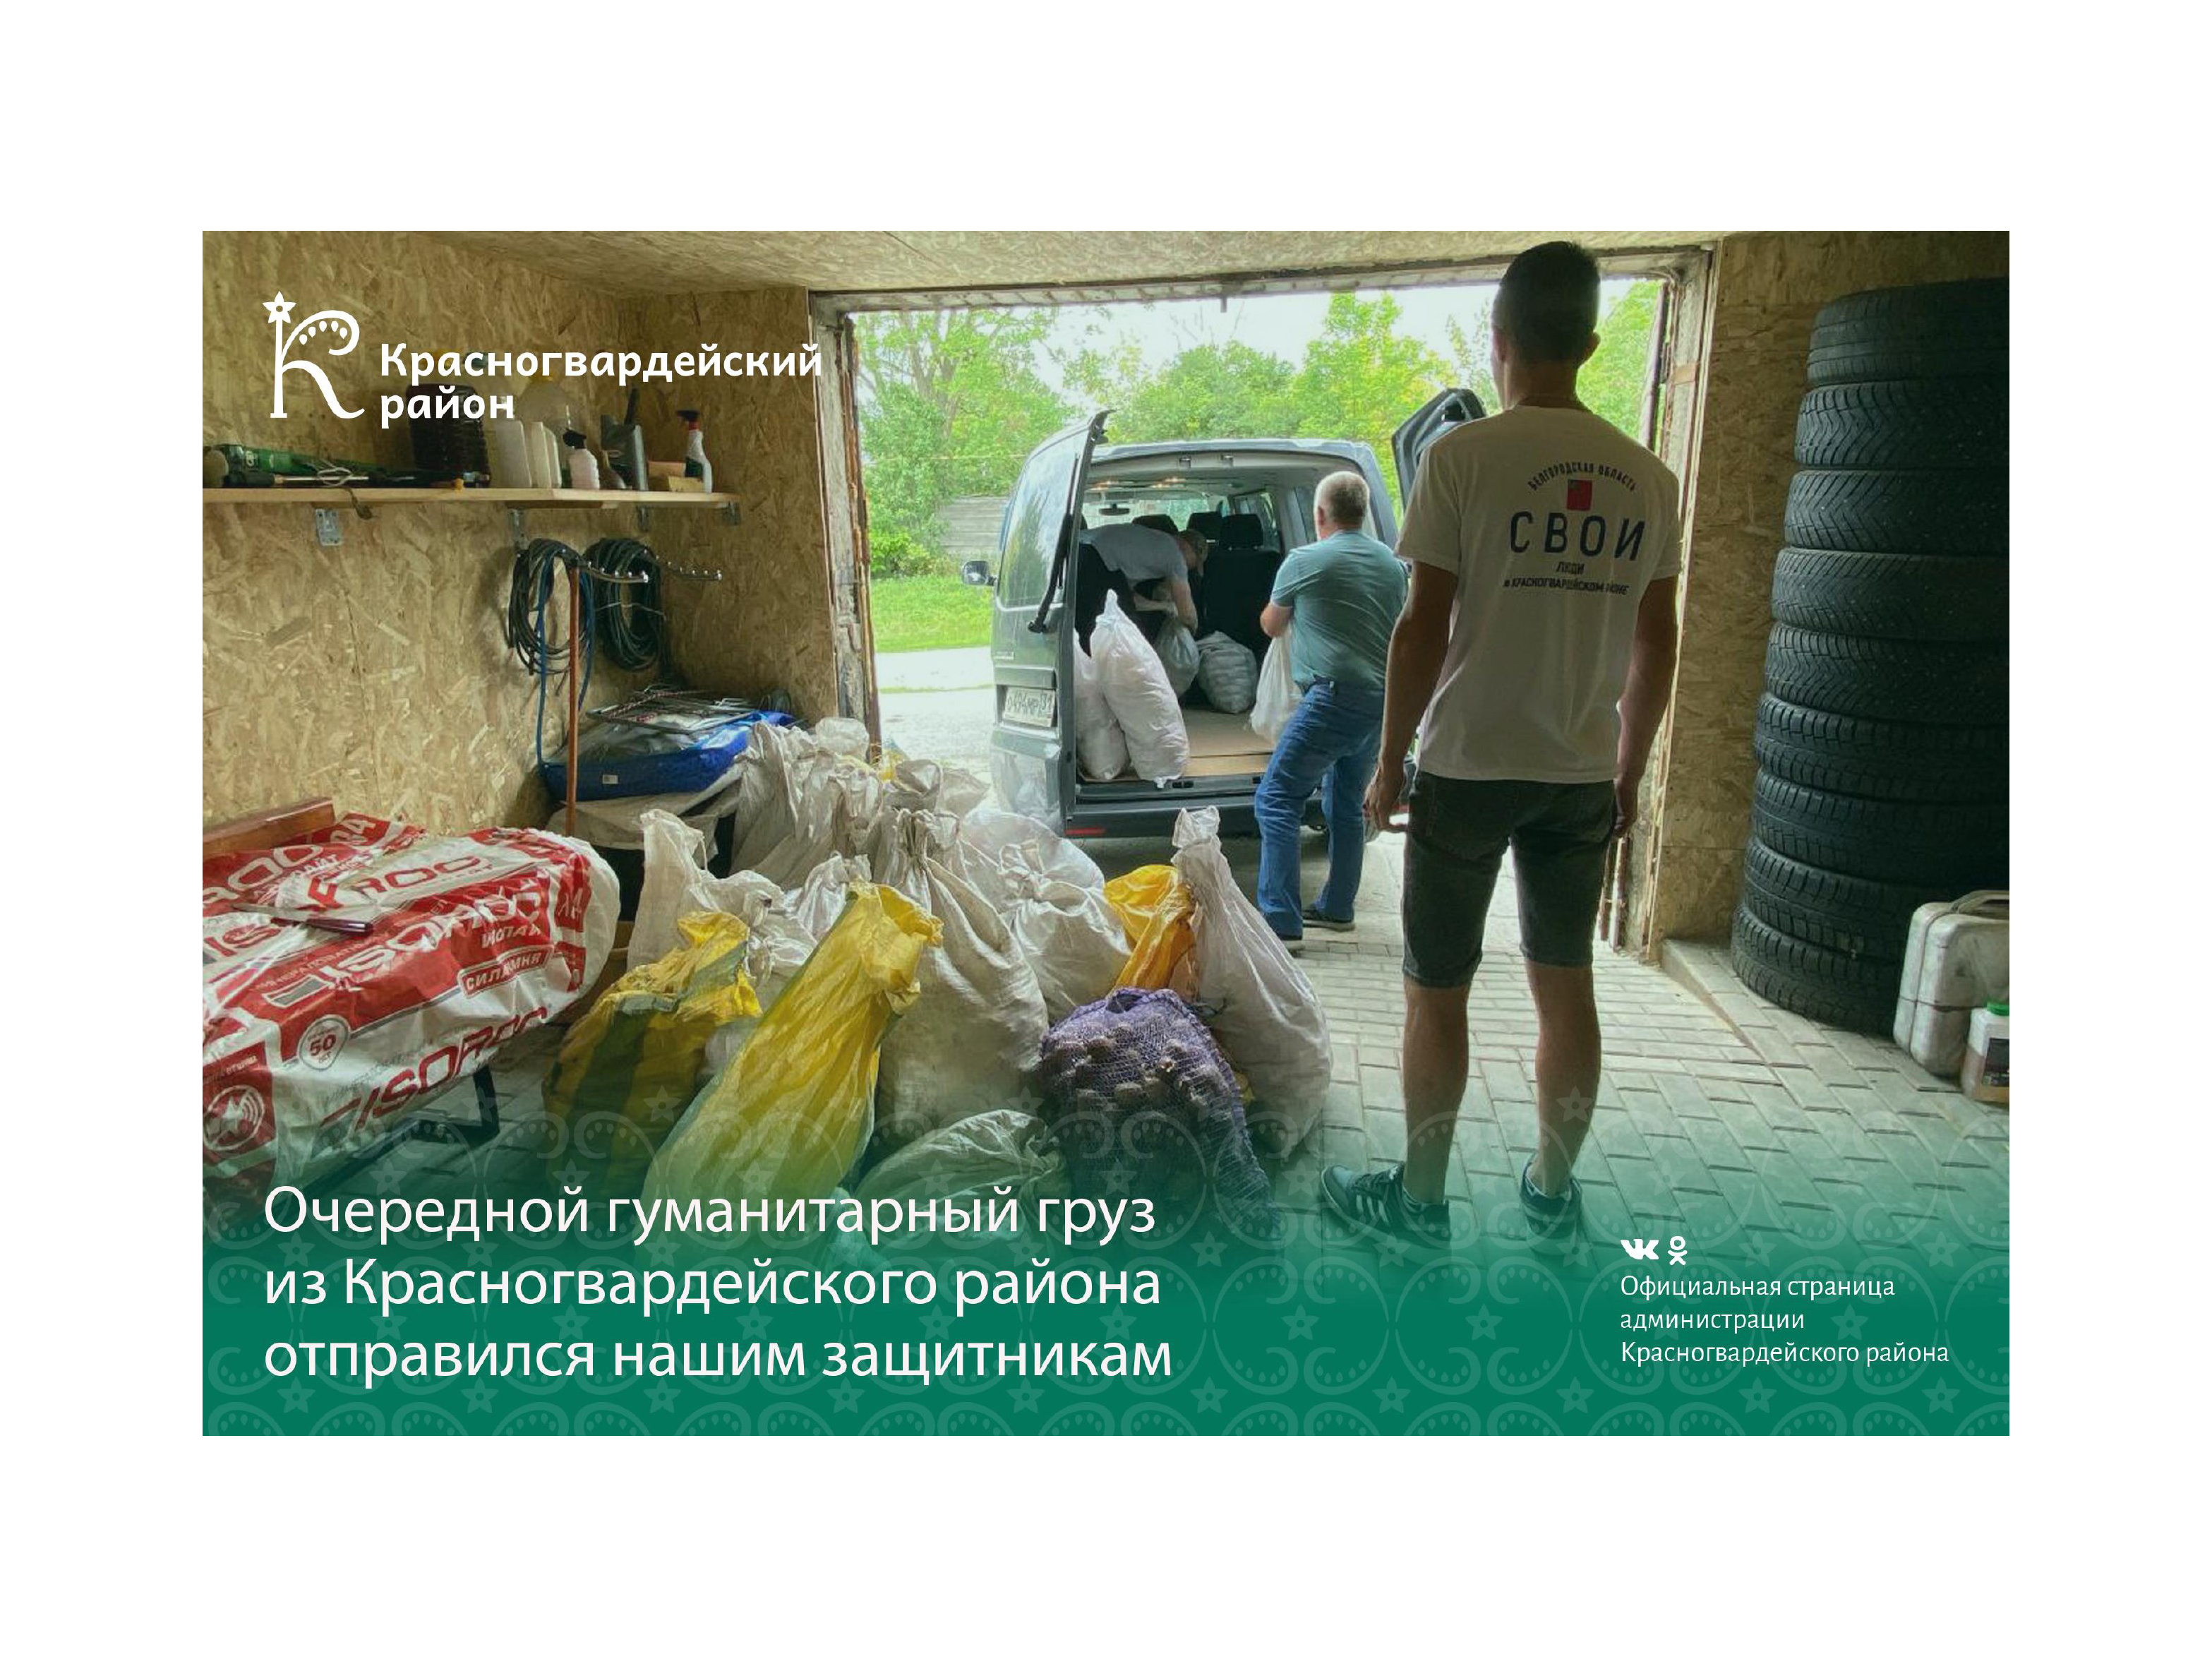 Очередной гуманитарный груз из Красногвардейского района отправился нашим защитникам.